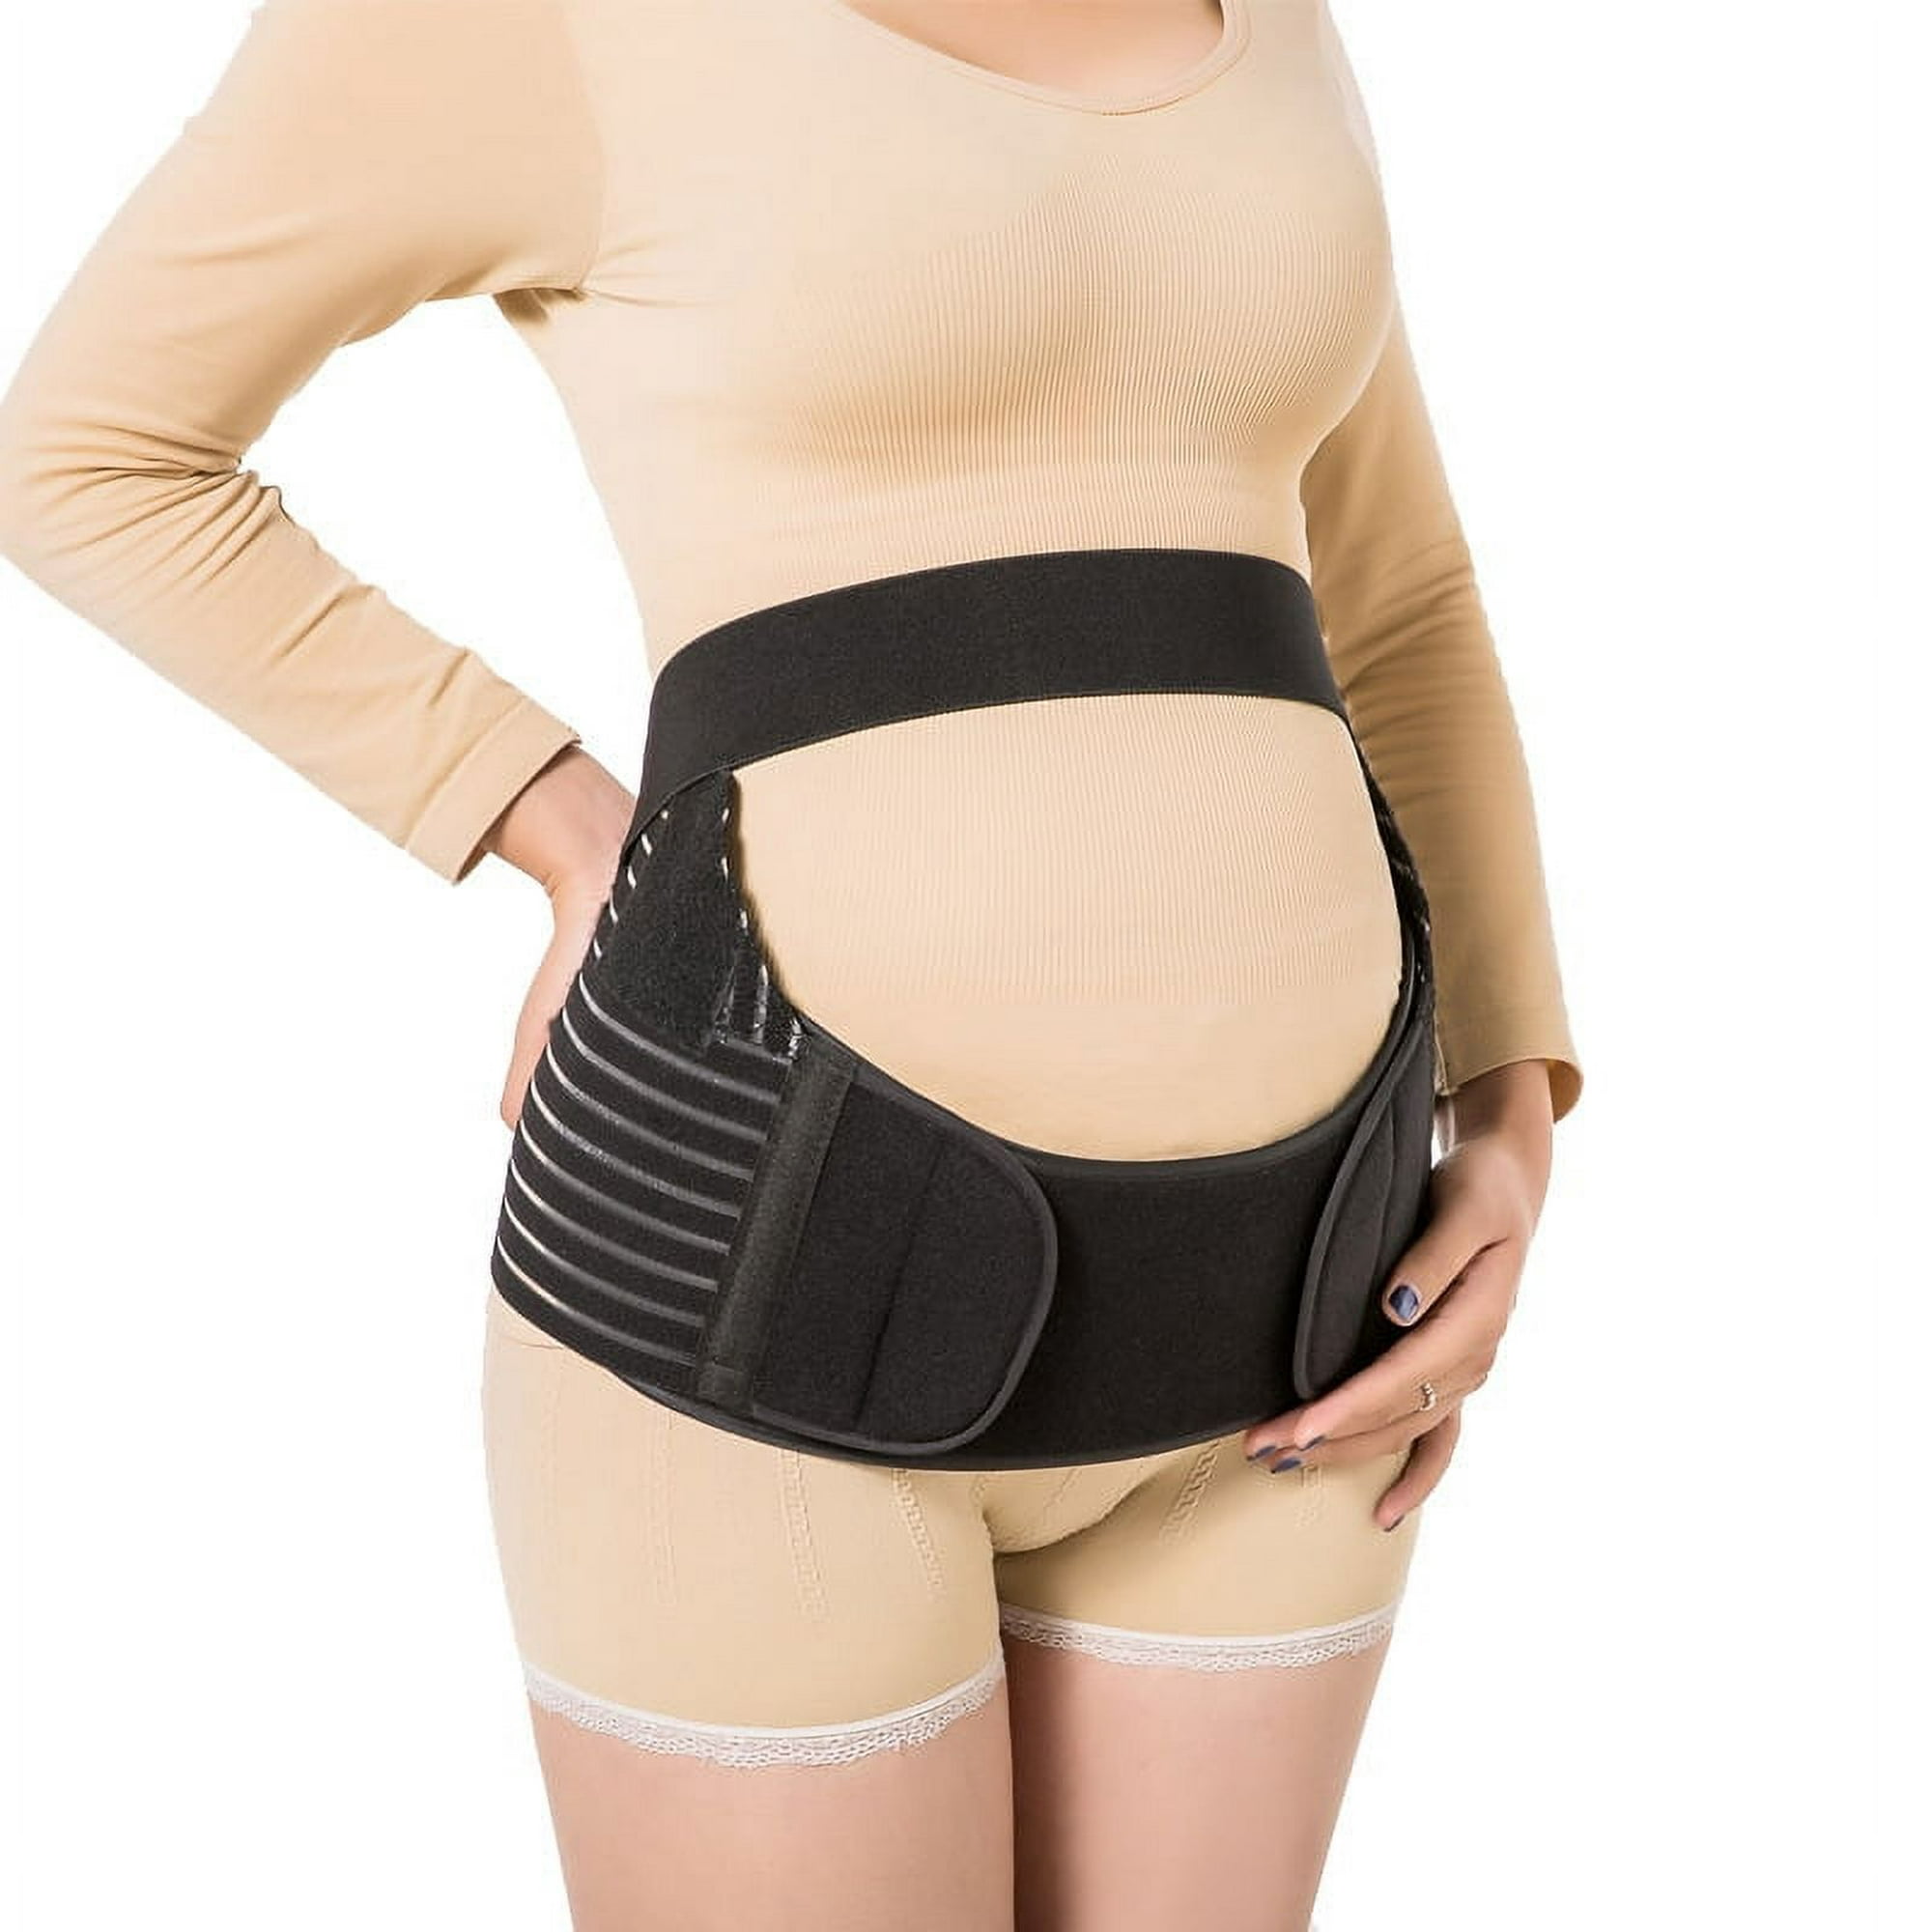 Faja de cinturón de maternidad, cinturón de maternidad 2 en 1 para todo el  embarazo y recuperación posparto, espalda transpirable y soporte pélvico  Cuna prenatal Zhivalor 220352-1